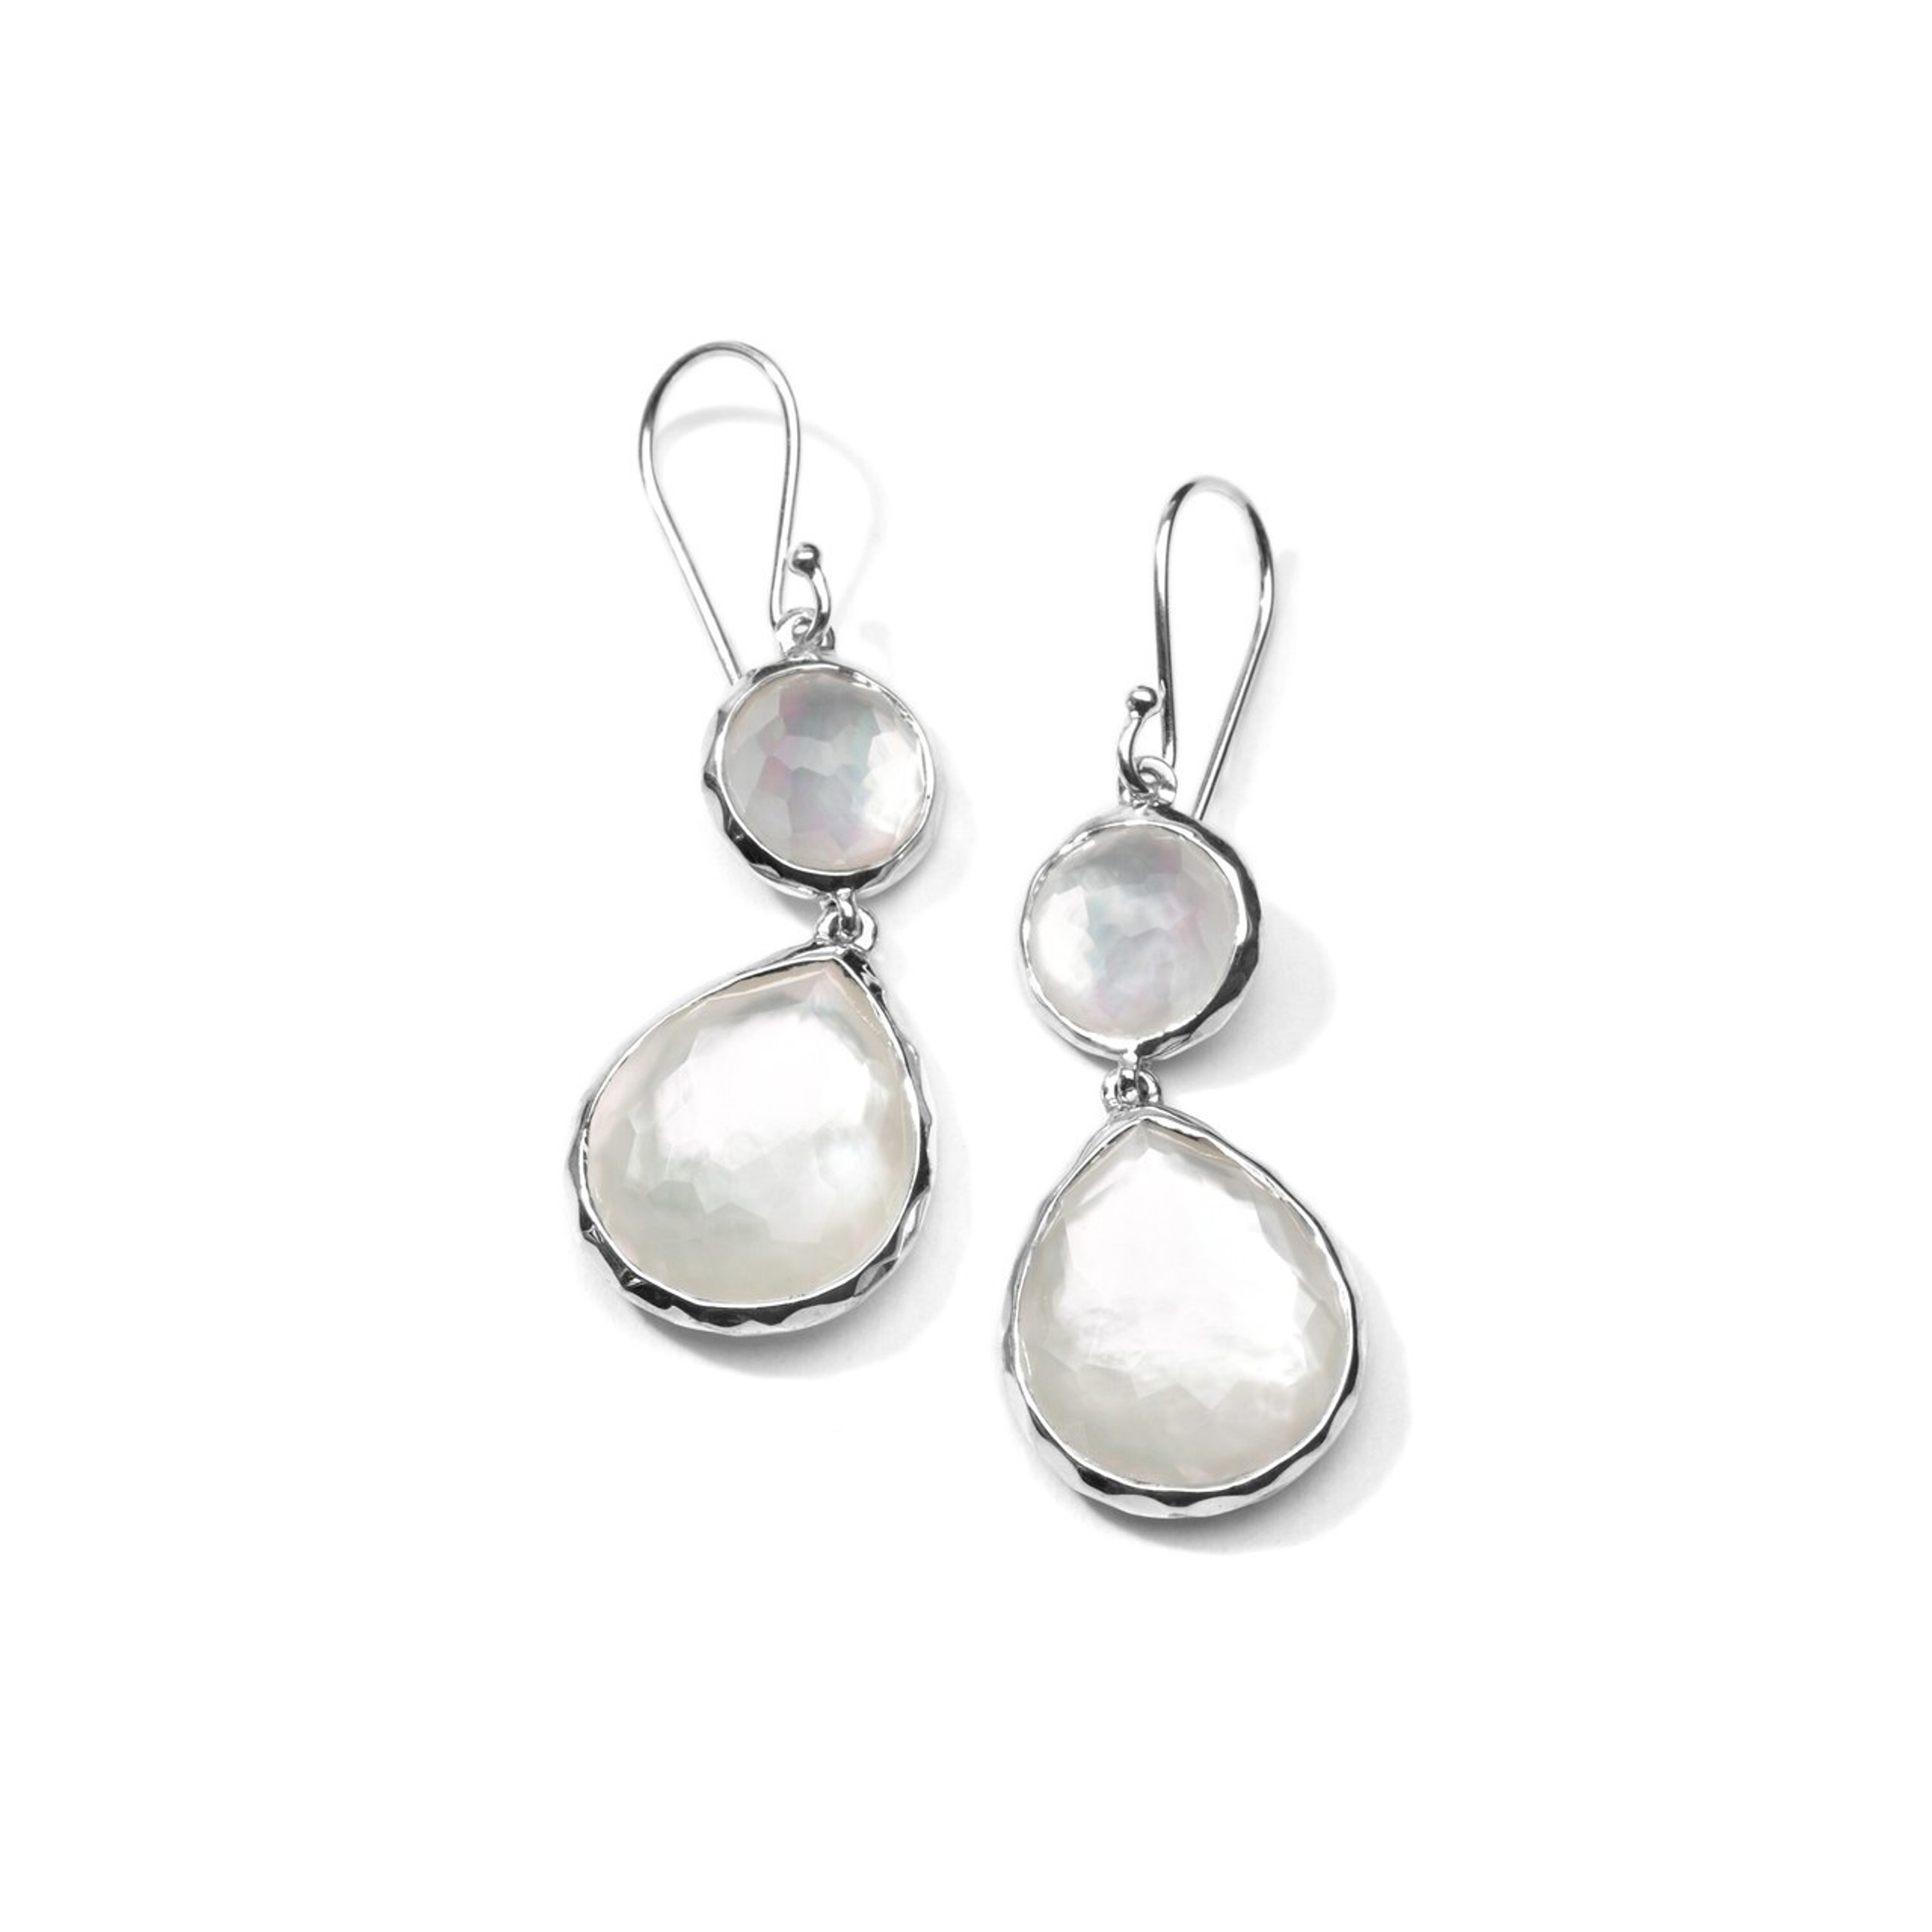 IPPOLITA Rock Candy® Double Drop Earrings in Sterling Silver